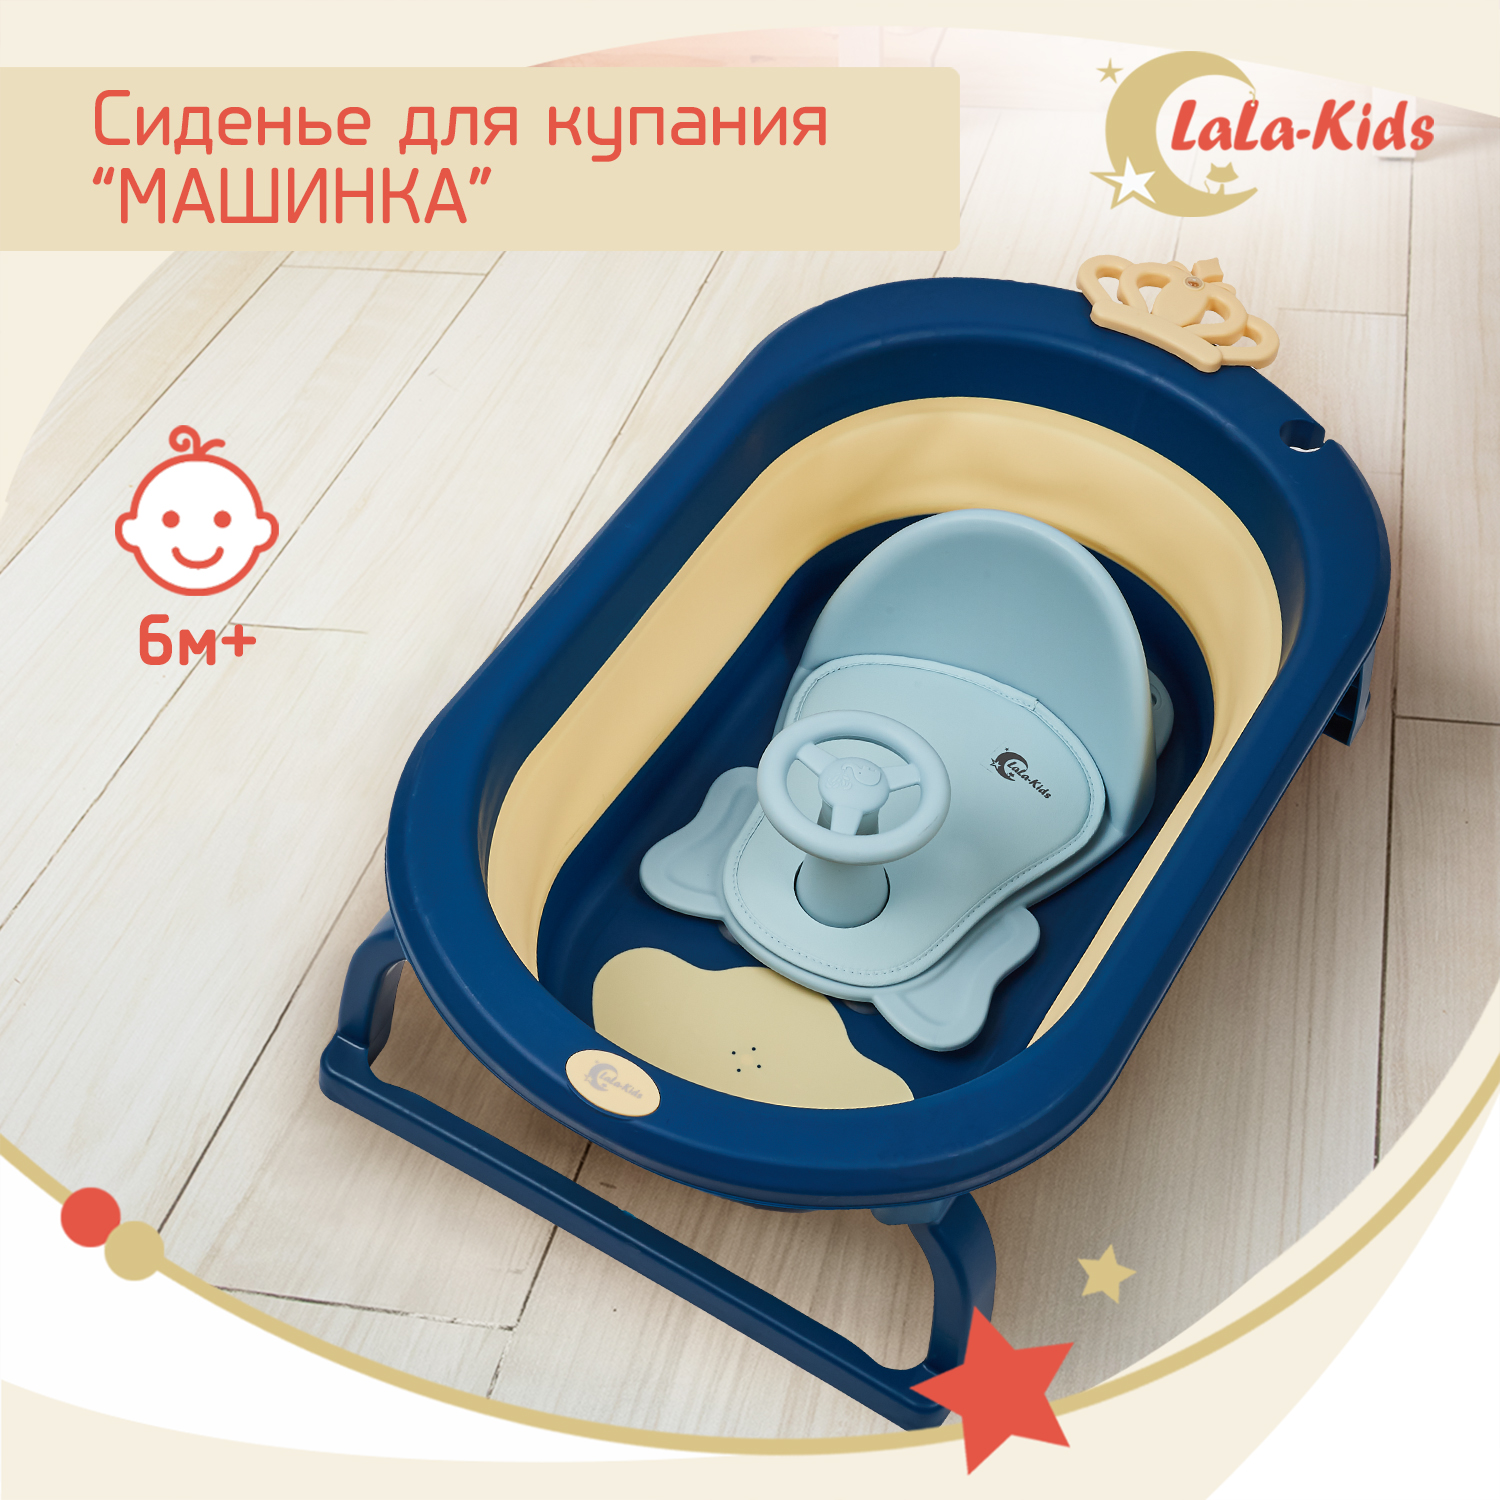 Детская ванночка LaLa-Kids складная с матрасиком для купания новорожденных - фото 19